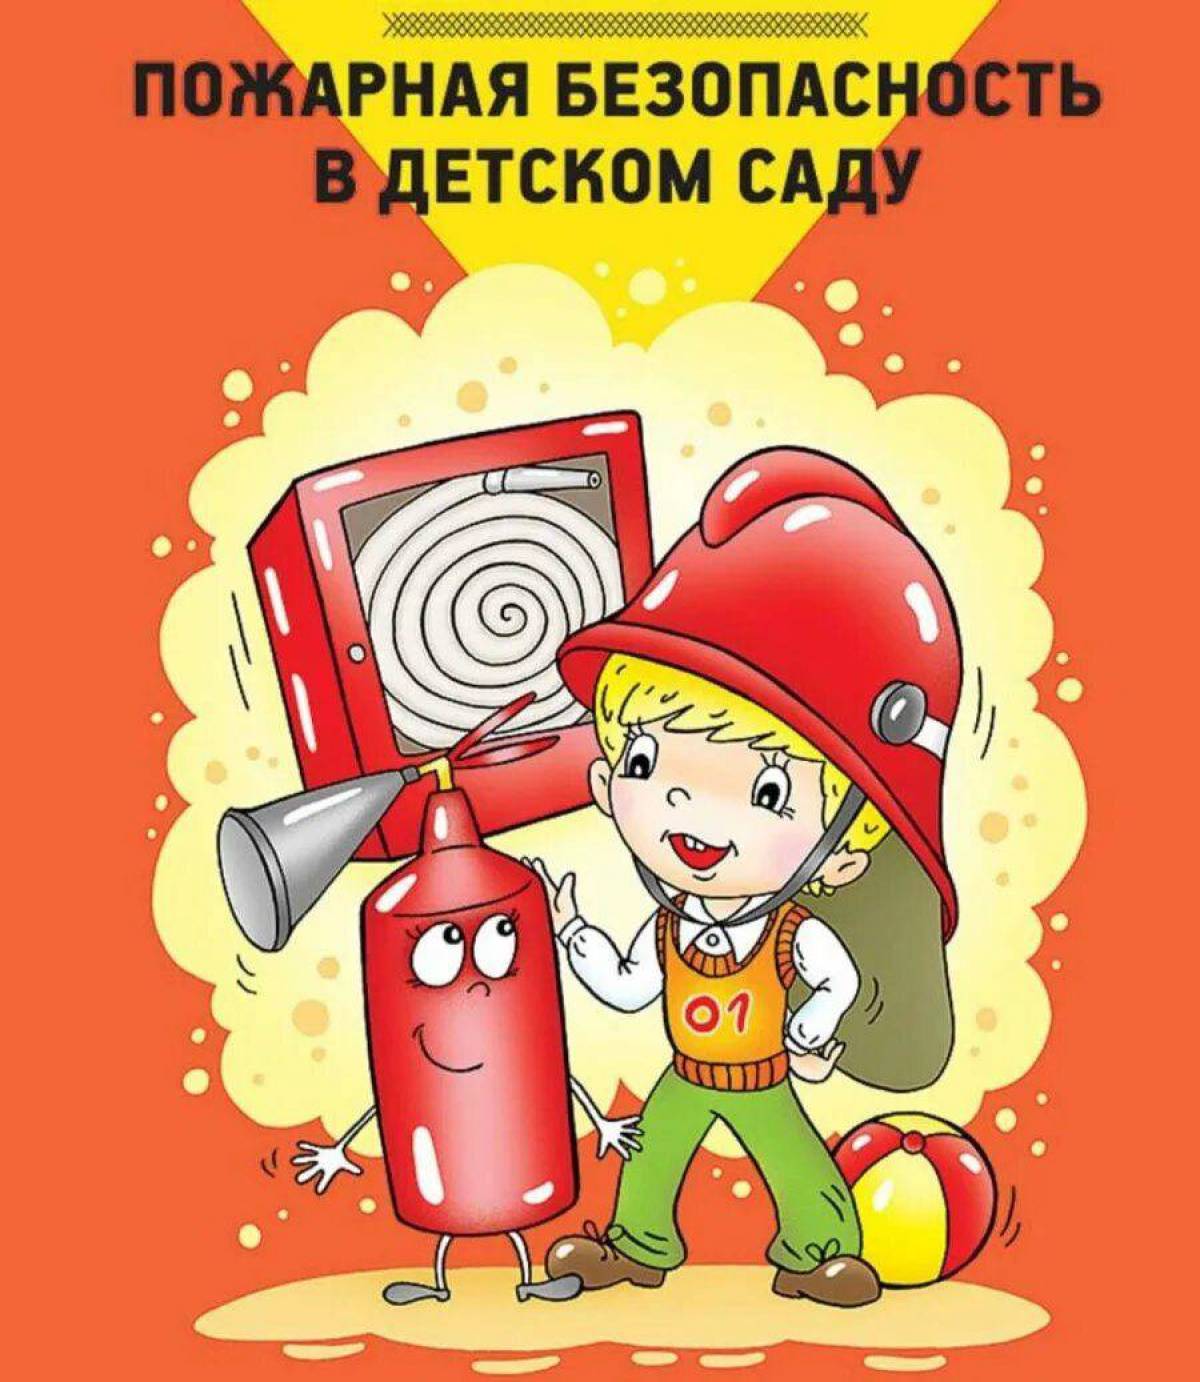 Пожарная безопасность картинки. Пожарная безопасность в детском саду. Пожарник безопасность в детском саду. Пажарныйбезопасность в детском саду. Пожарная безопасность в ДОУ для детей.